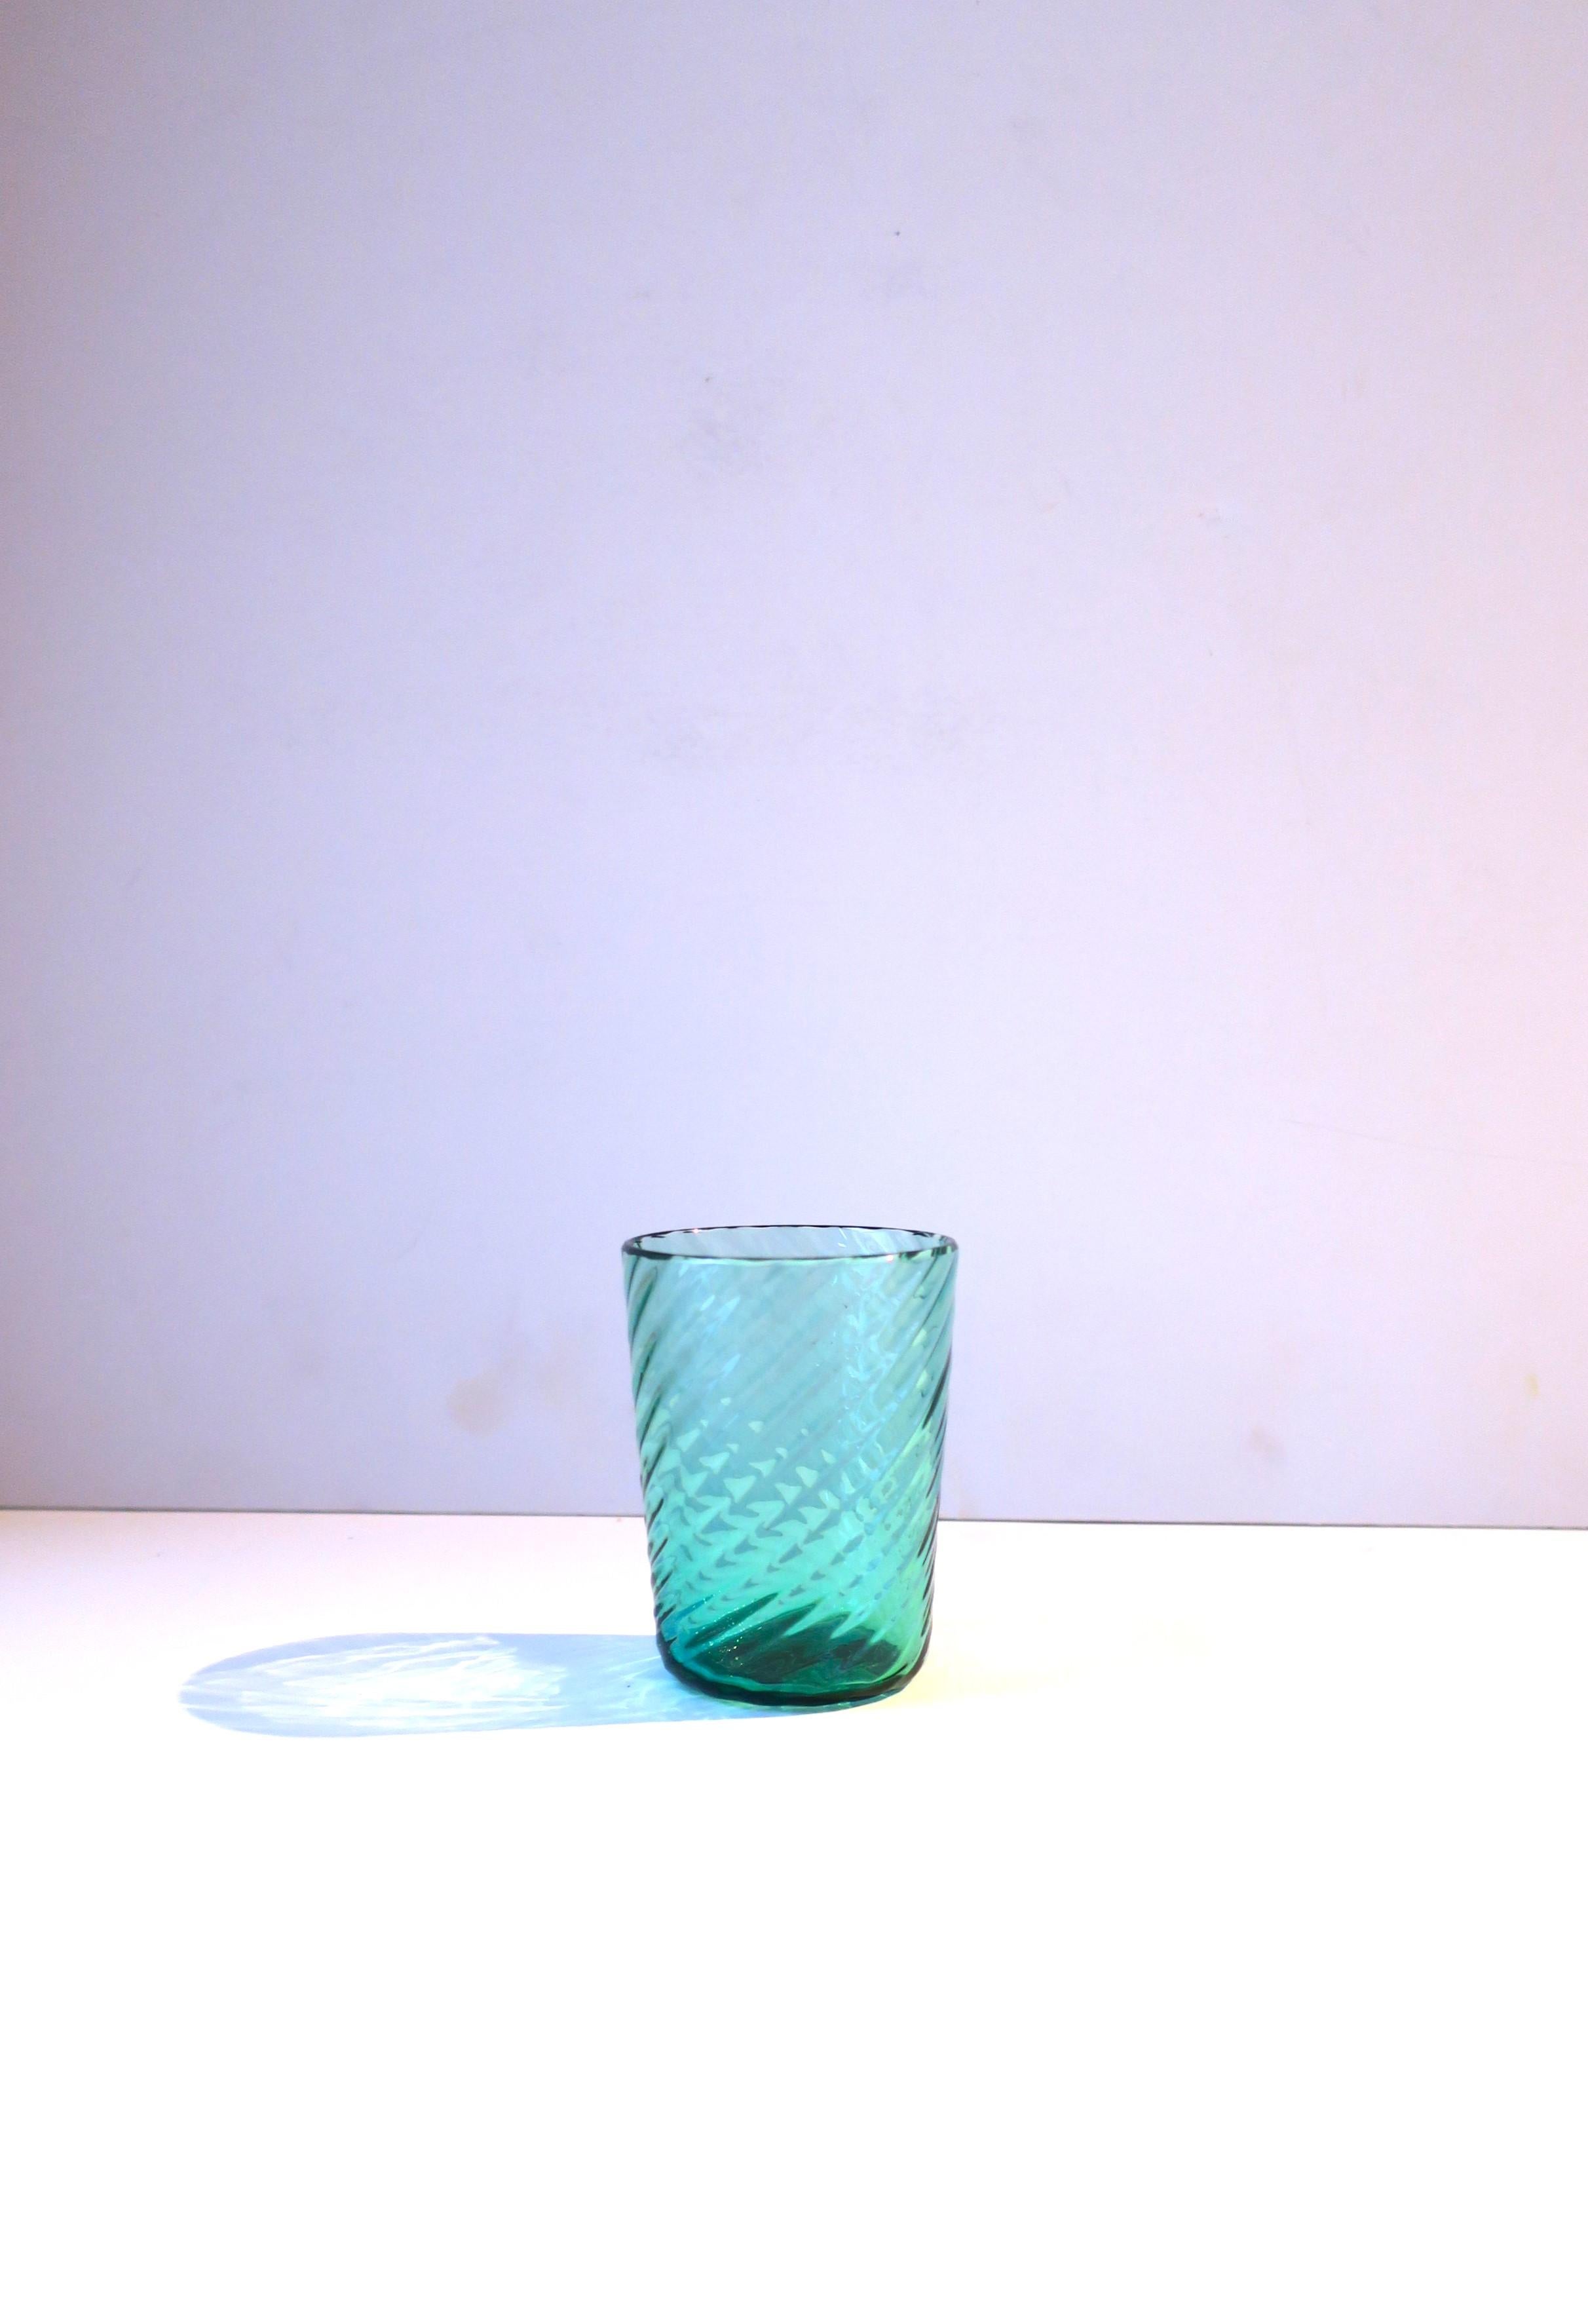 Vase ou récipient cannelé en verre d'art italien Murano Archimede Seguso vert émeraude, vers le milieu du XXe siècle, Italie. Magnifique vase ou verre à boire en verre d'art italien de Murano, cannelé et fabriqué à la main, de couleur vert émeraude.